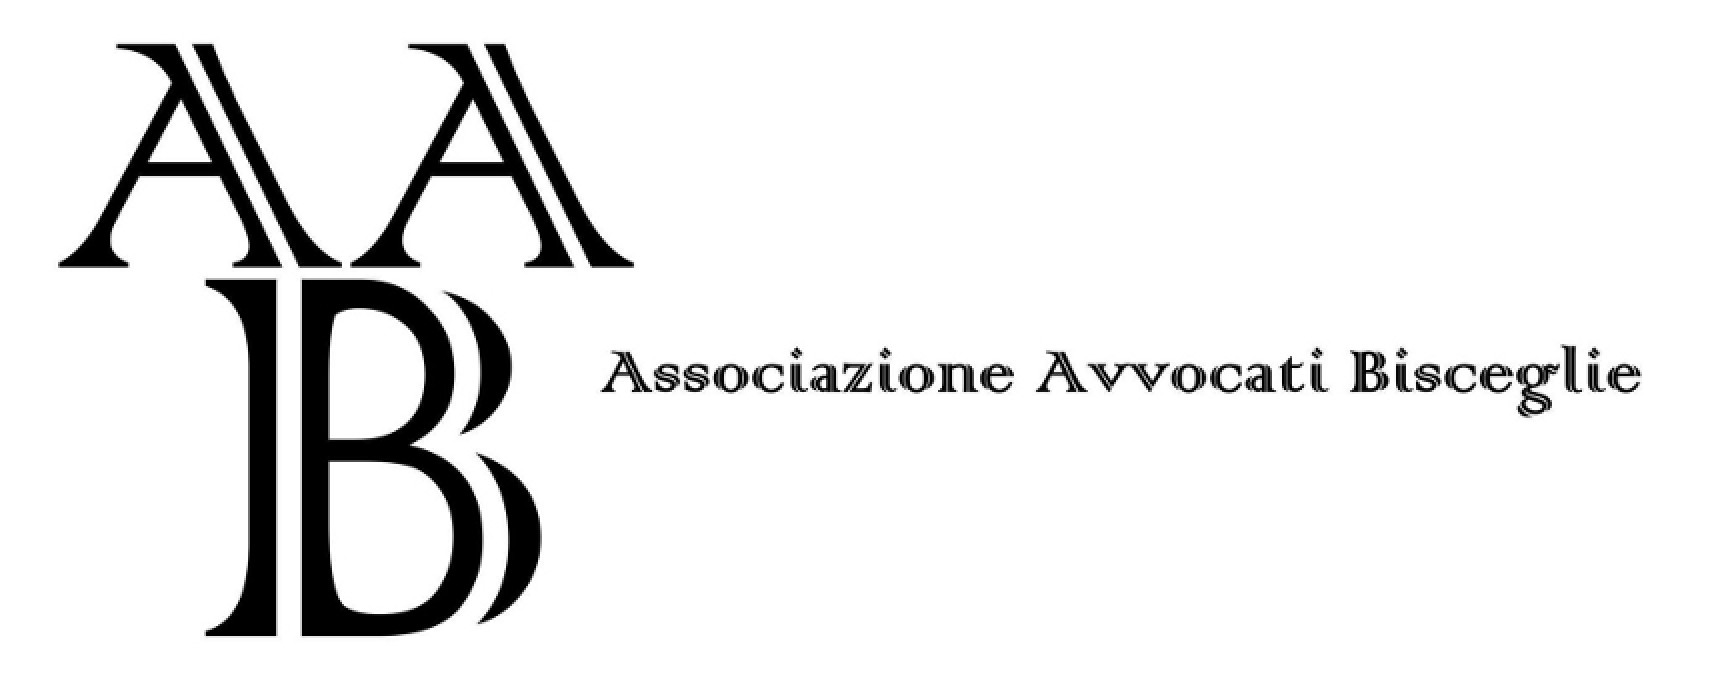 Associazione Avvocati Bisceglie: assegnate le cariche per il biennio 2015-17